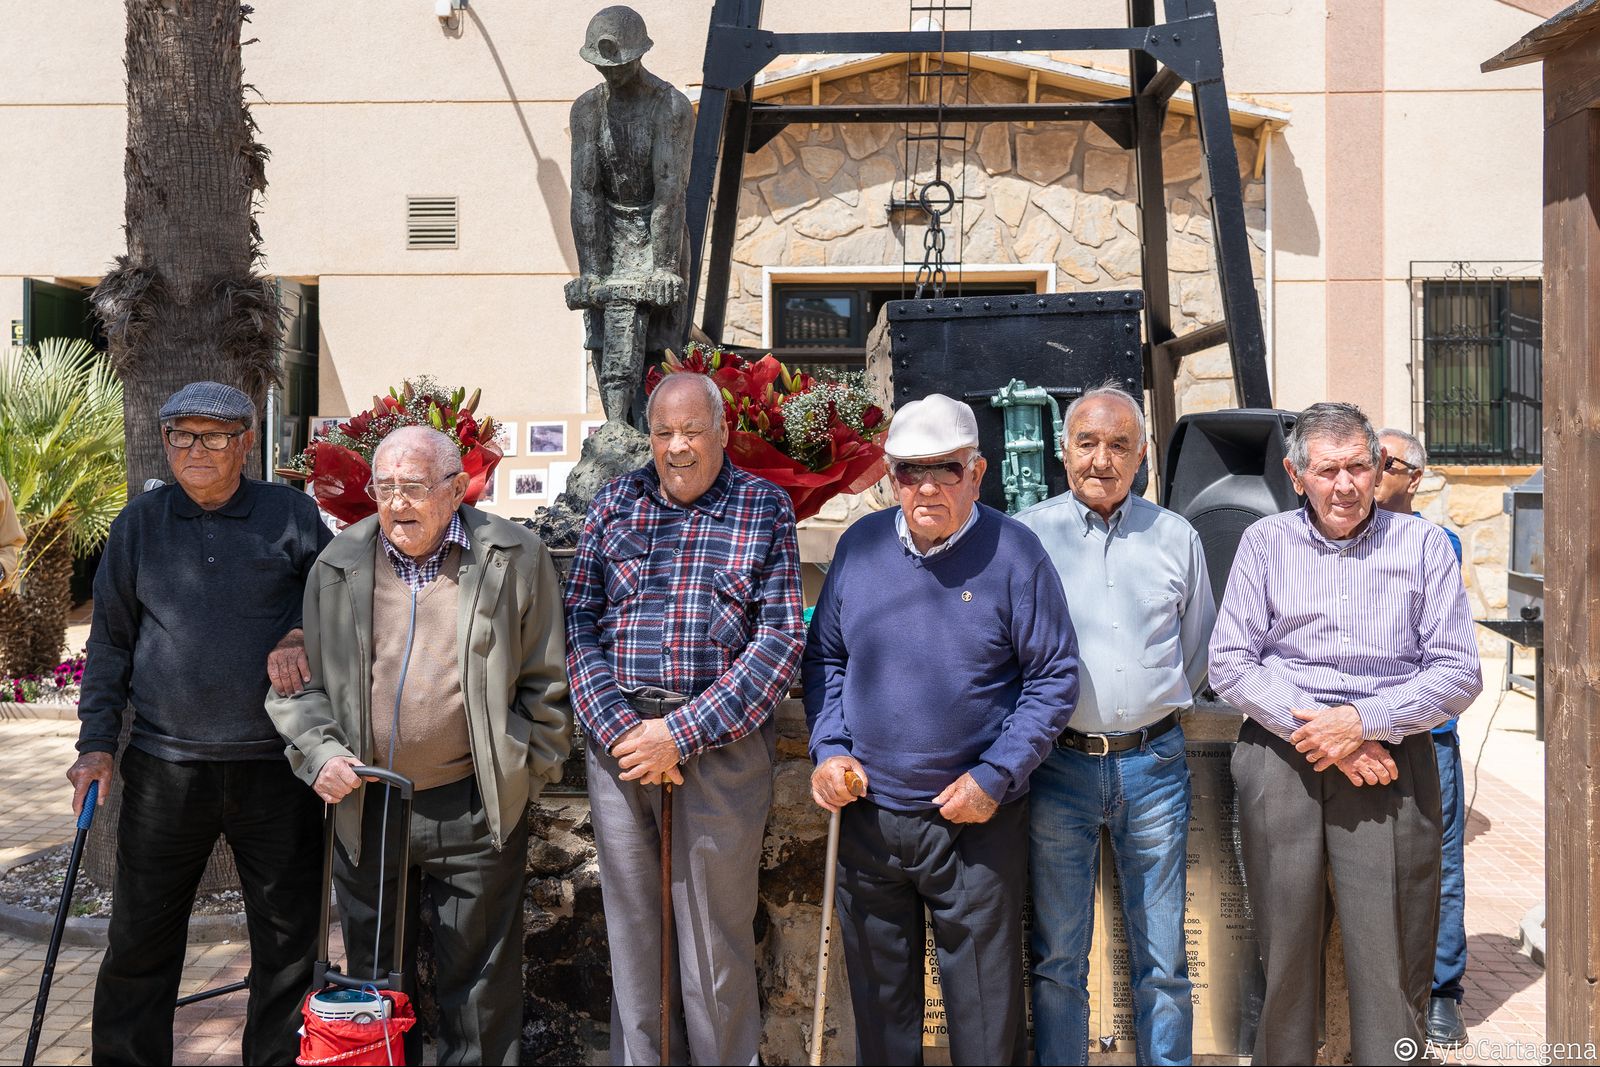 Homenaje 40 aniversario monumento al minero El Llano del Beal